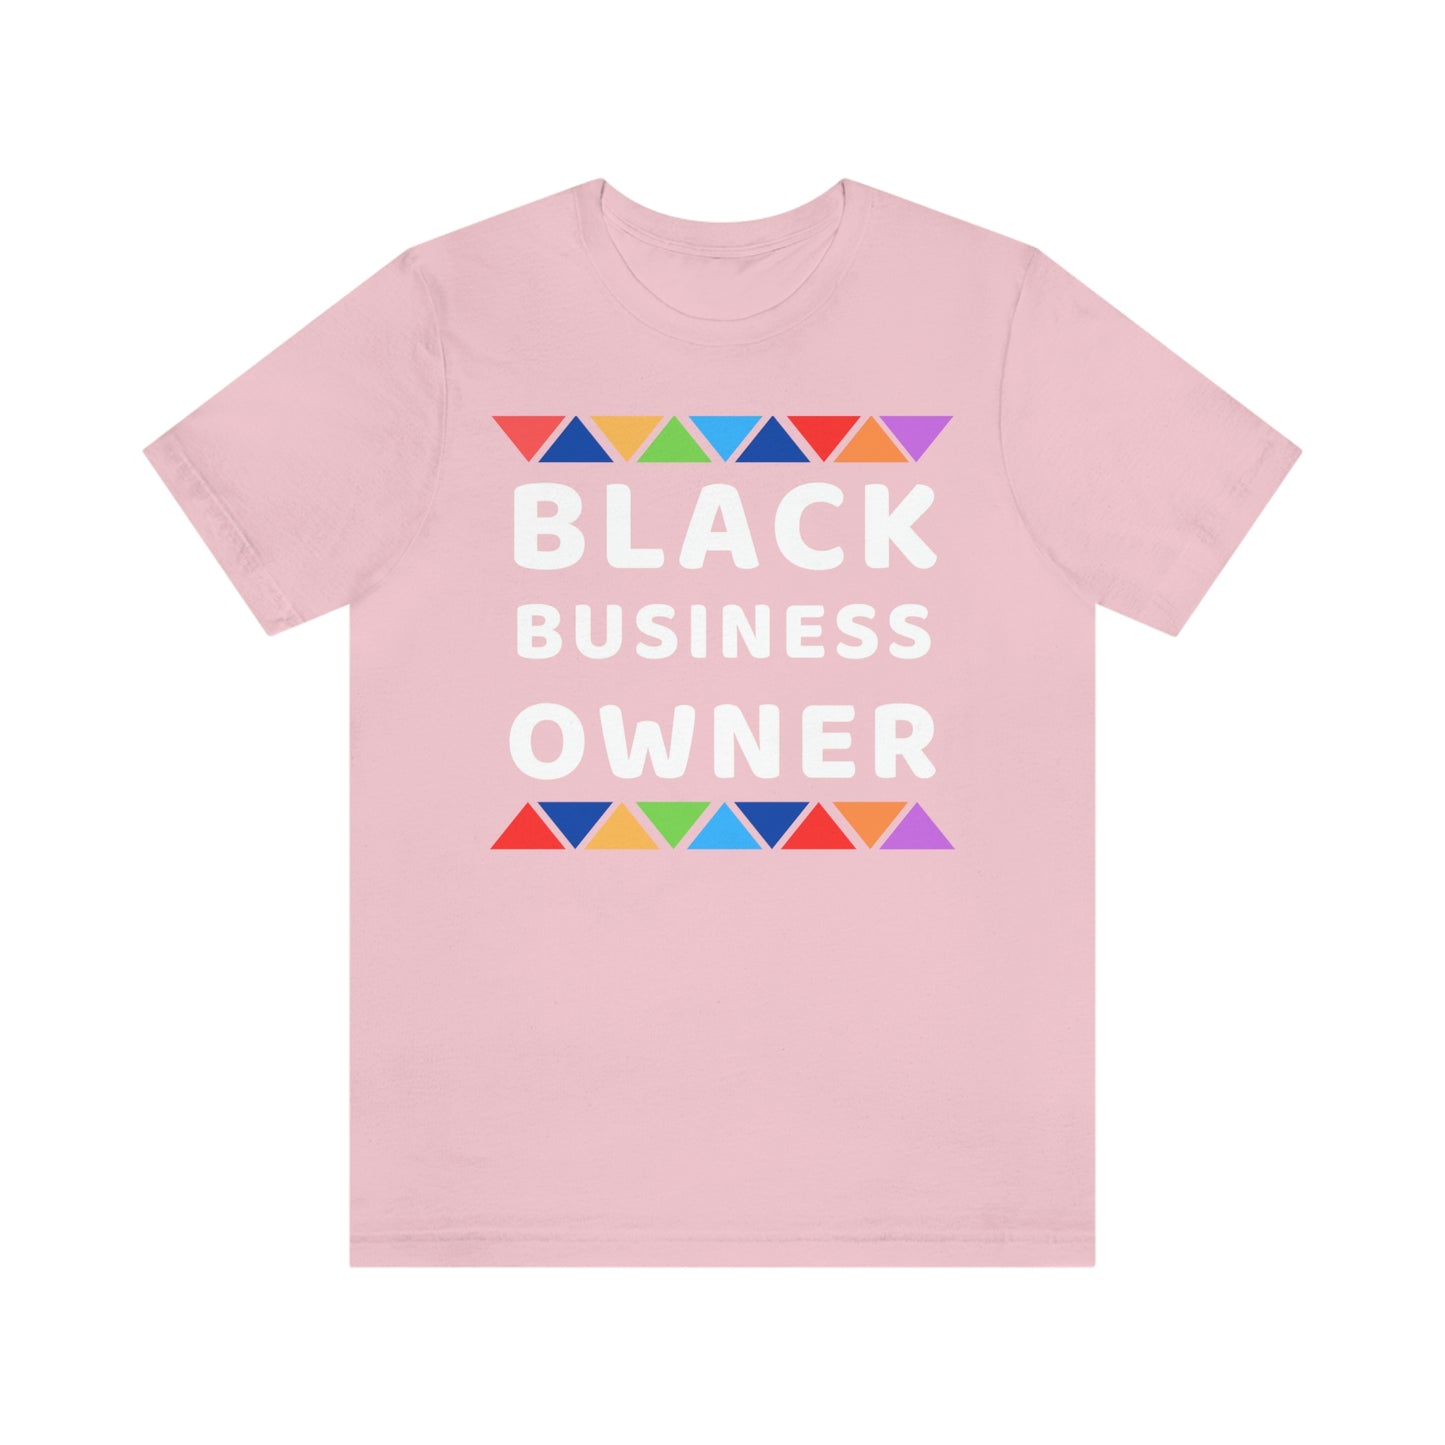 Black Business Owner shirt - Black entrepreneur shirt small business owner business owner gift CEO shirt, black owned shop